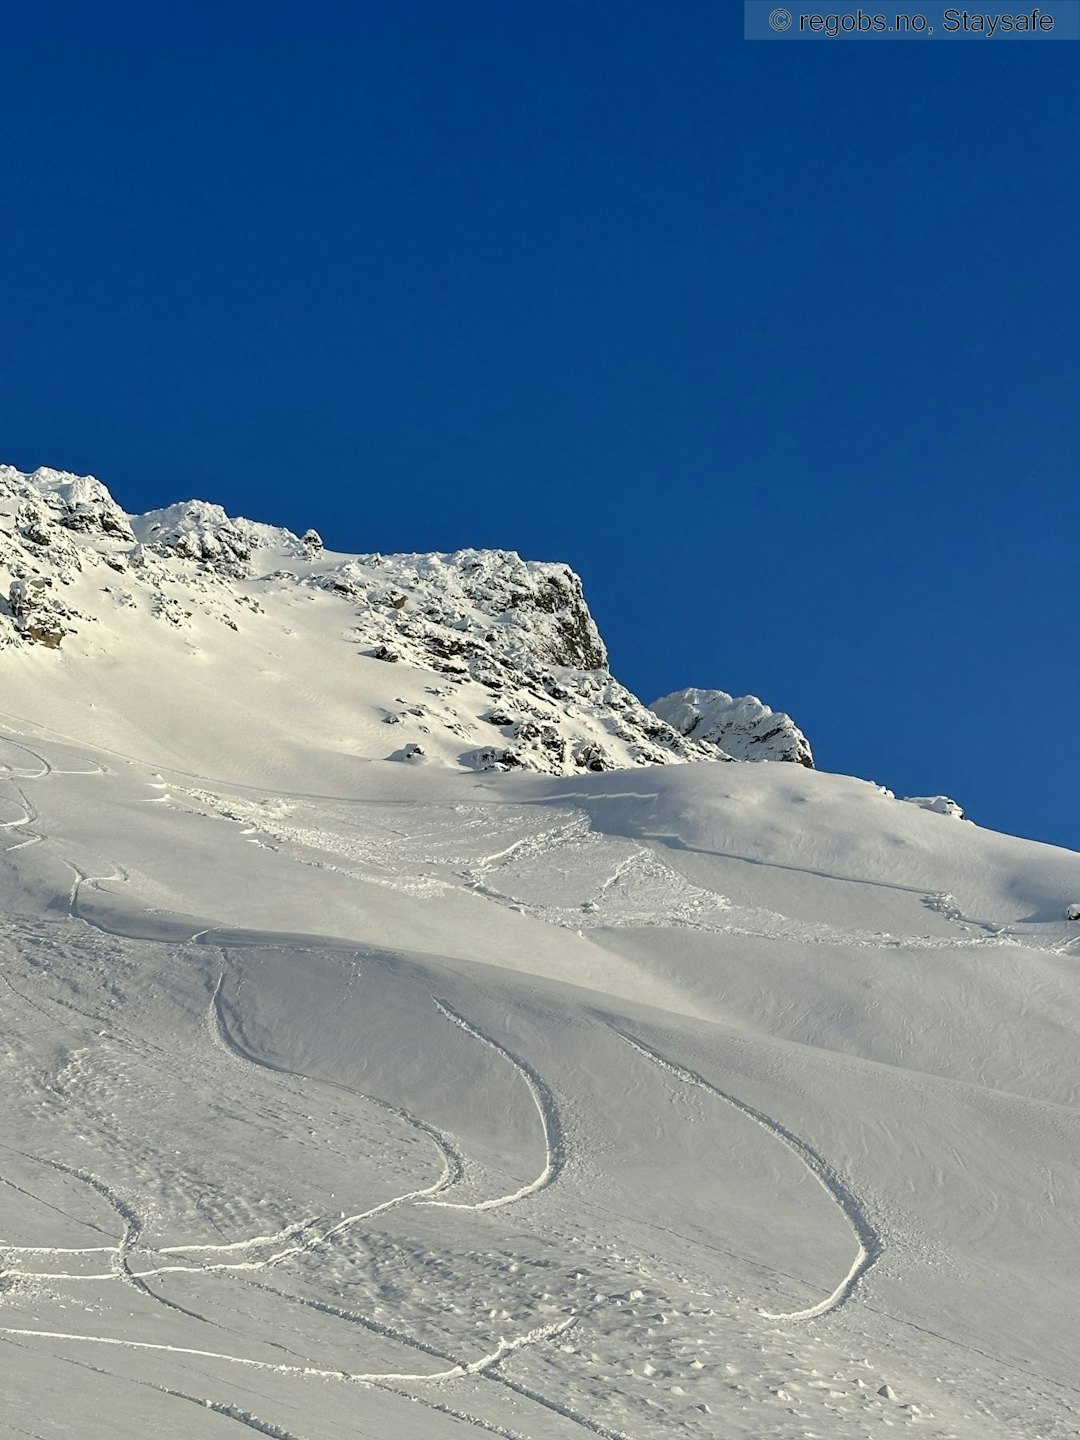 SPOR INN I SKREDET: Finn & Co snudde, men noen timer senere ble det observert skispor inn i et skredområde samme sted på skredvarslingen i Lyngen. Foto: RegObs / Staysafe